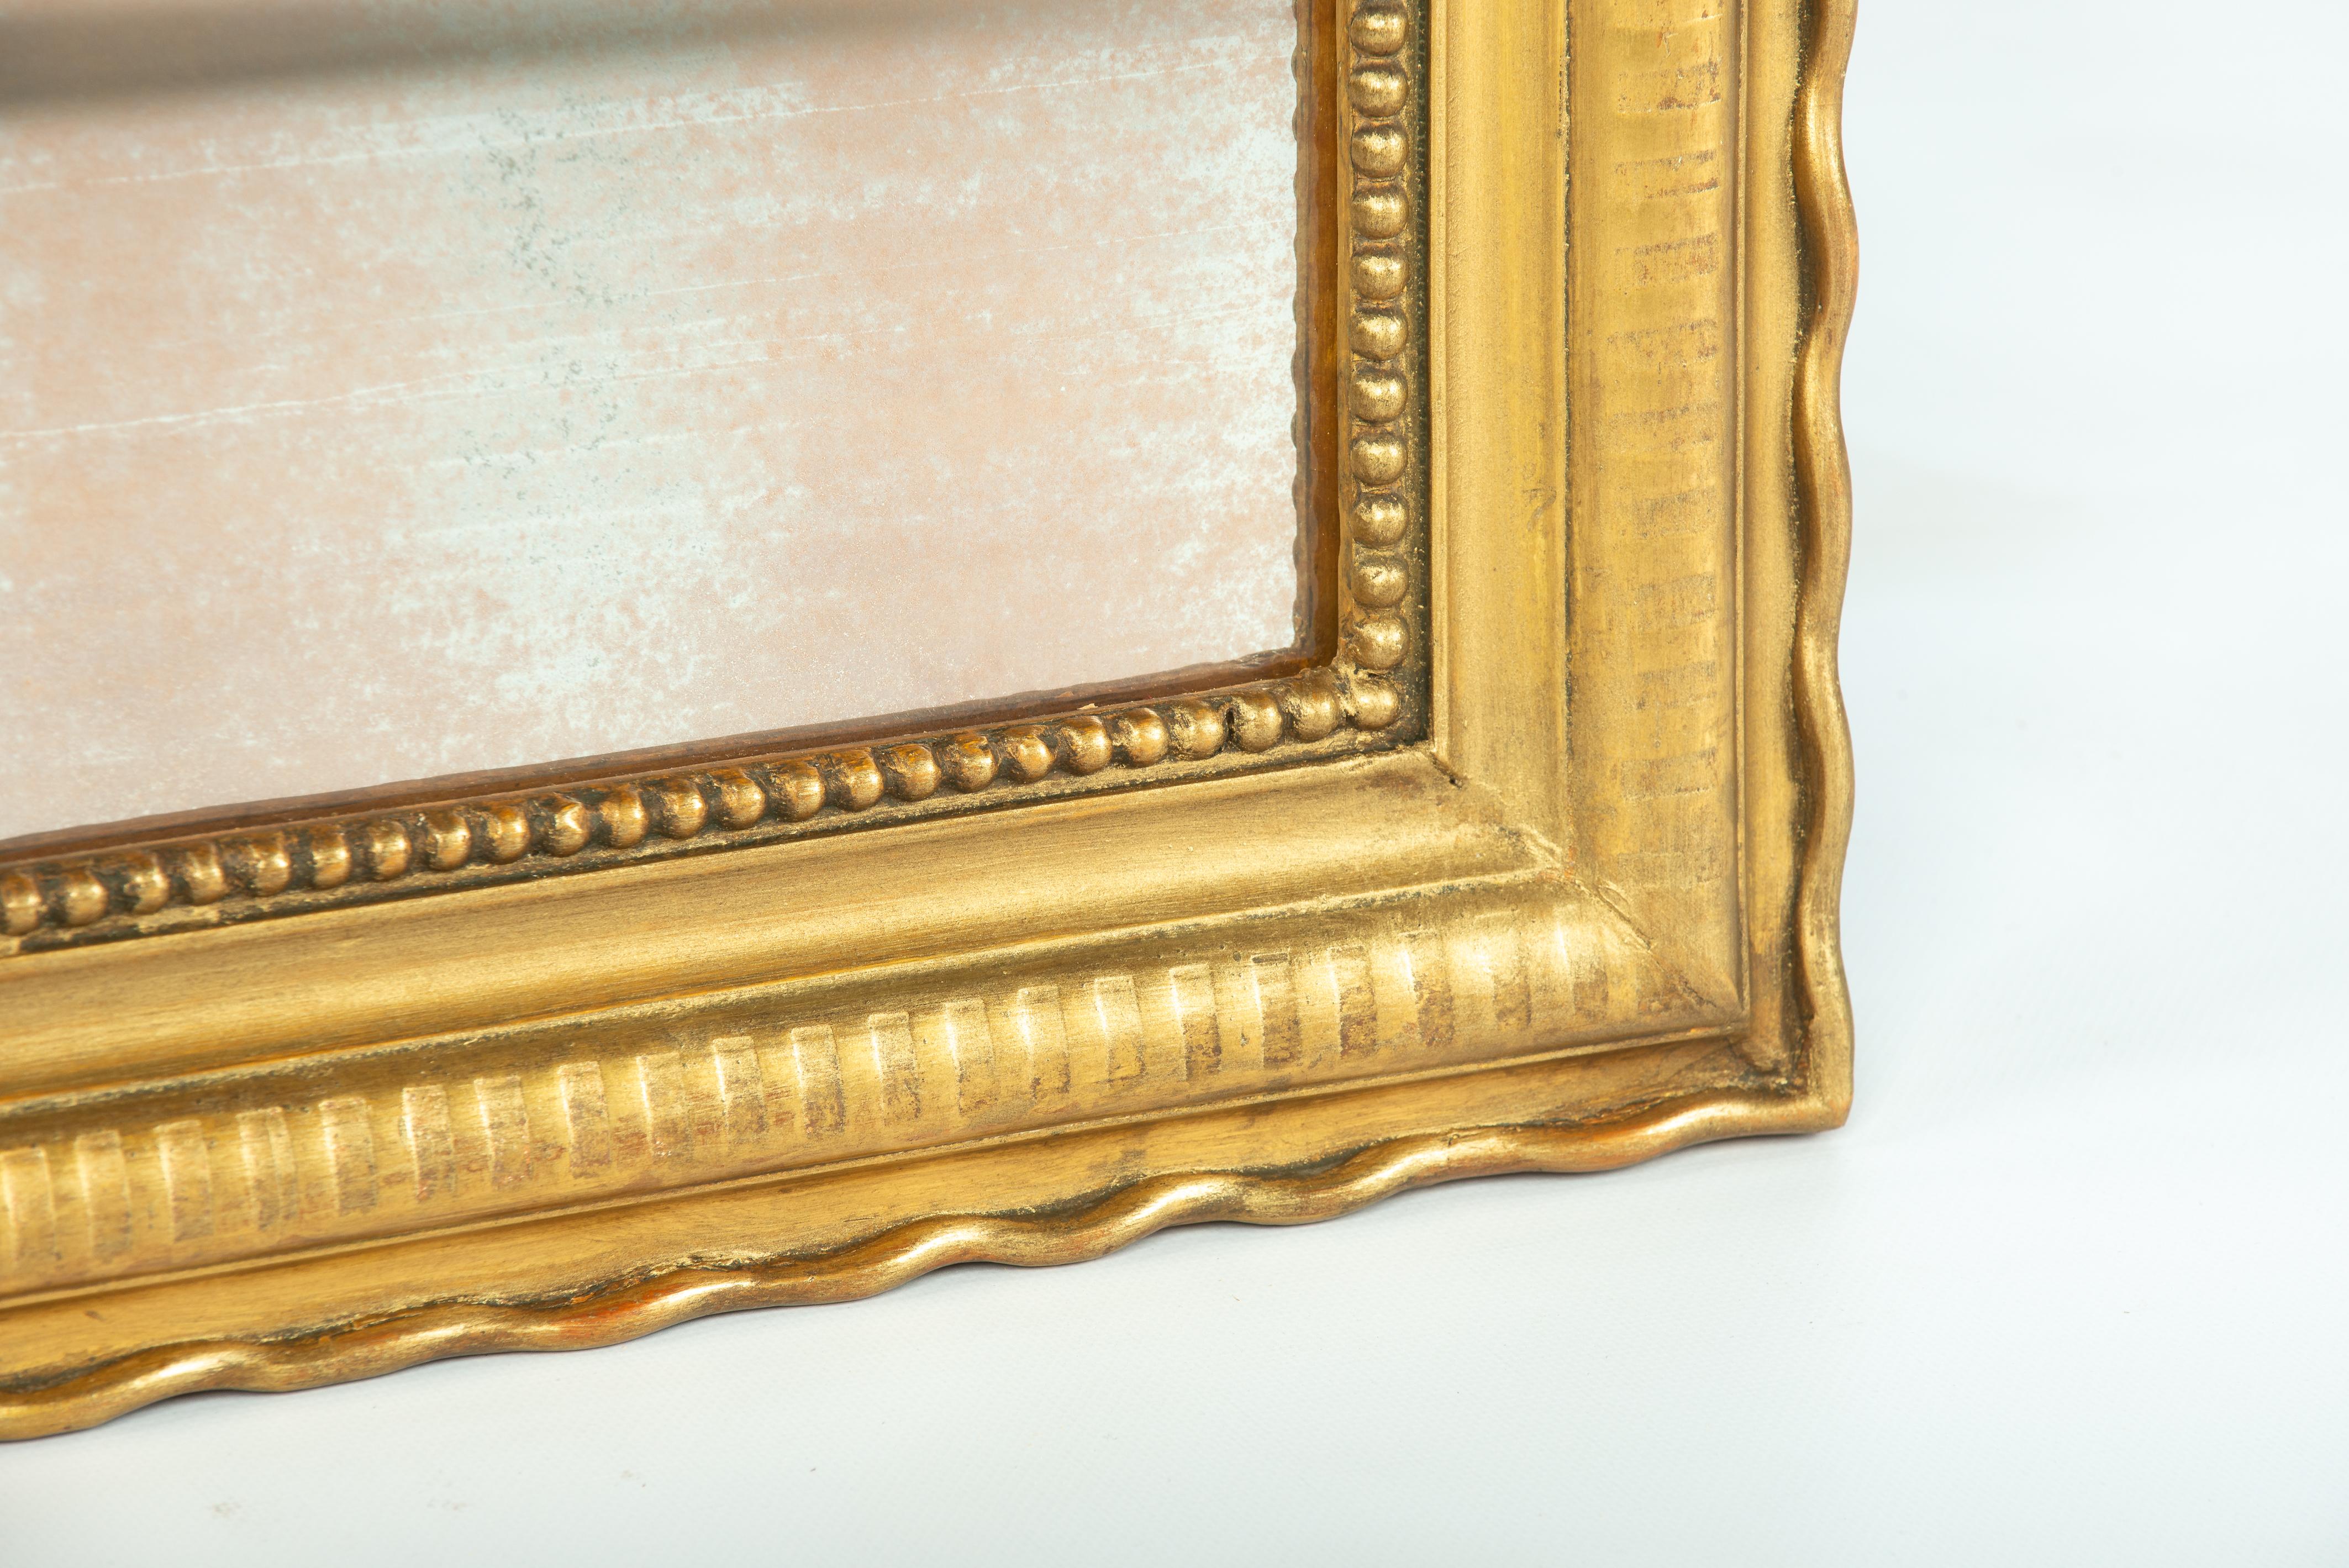 Voici un magnifique miroir Louis Philippe ancien, doré à la feuille d'or, provenant de France. Ce miroir date d'environ 1870 et présente des angles supérieurs arrondis caractéristiques du style Louis Philippe. Fabriqué dans le sud de la France, il